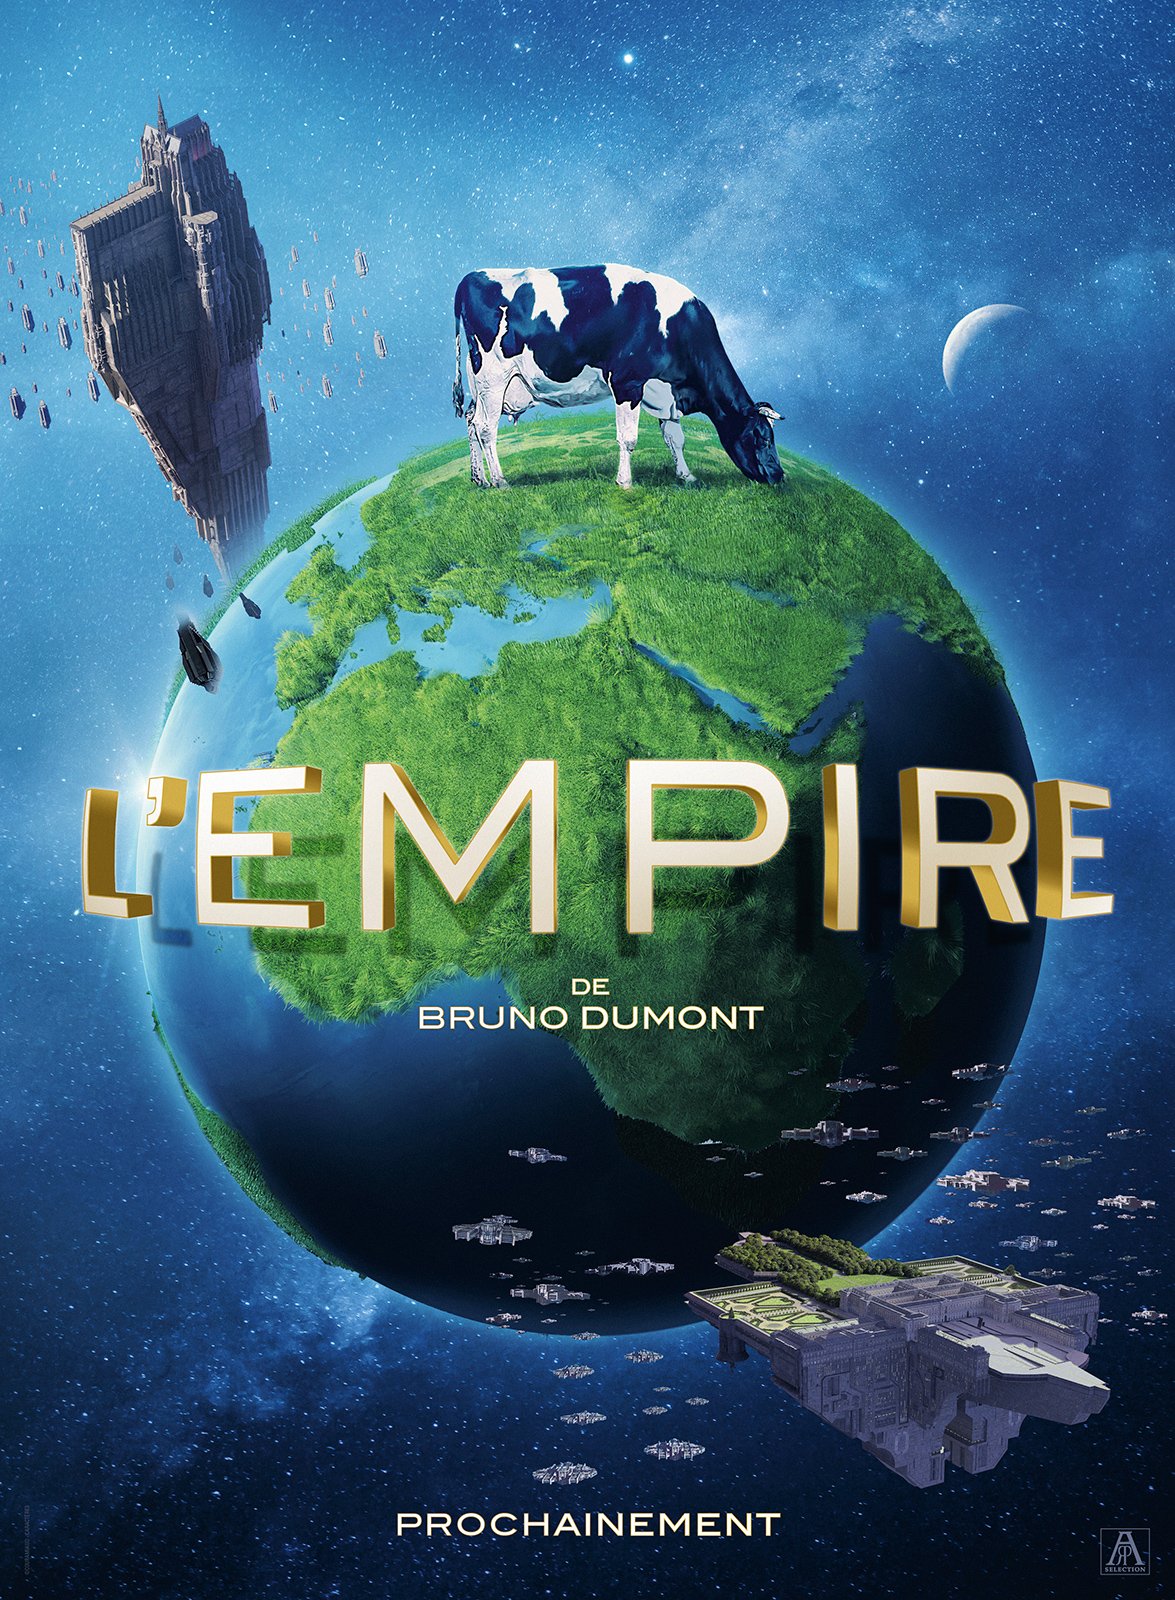 Le Star Wars français, L’Empire, se dévoile dans une première bande annonce.